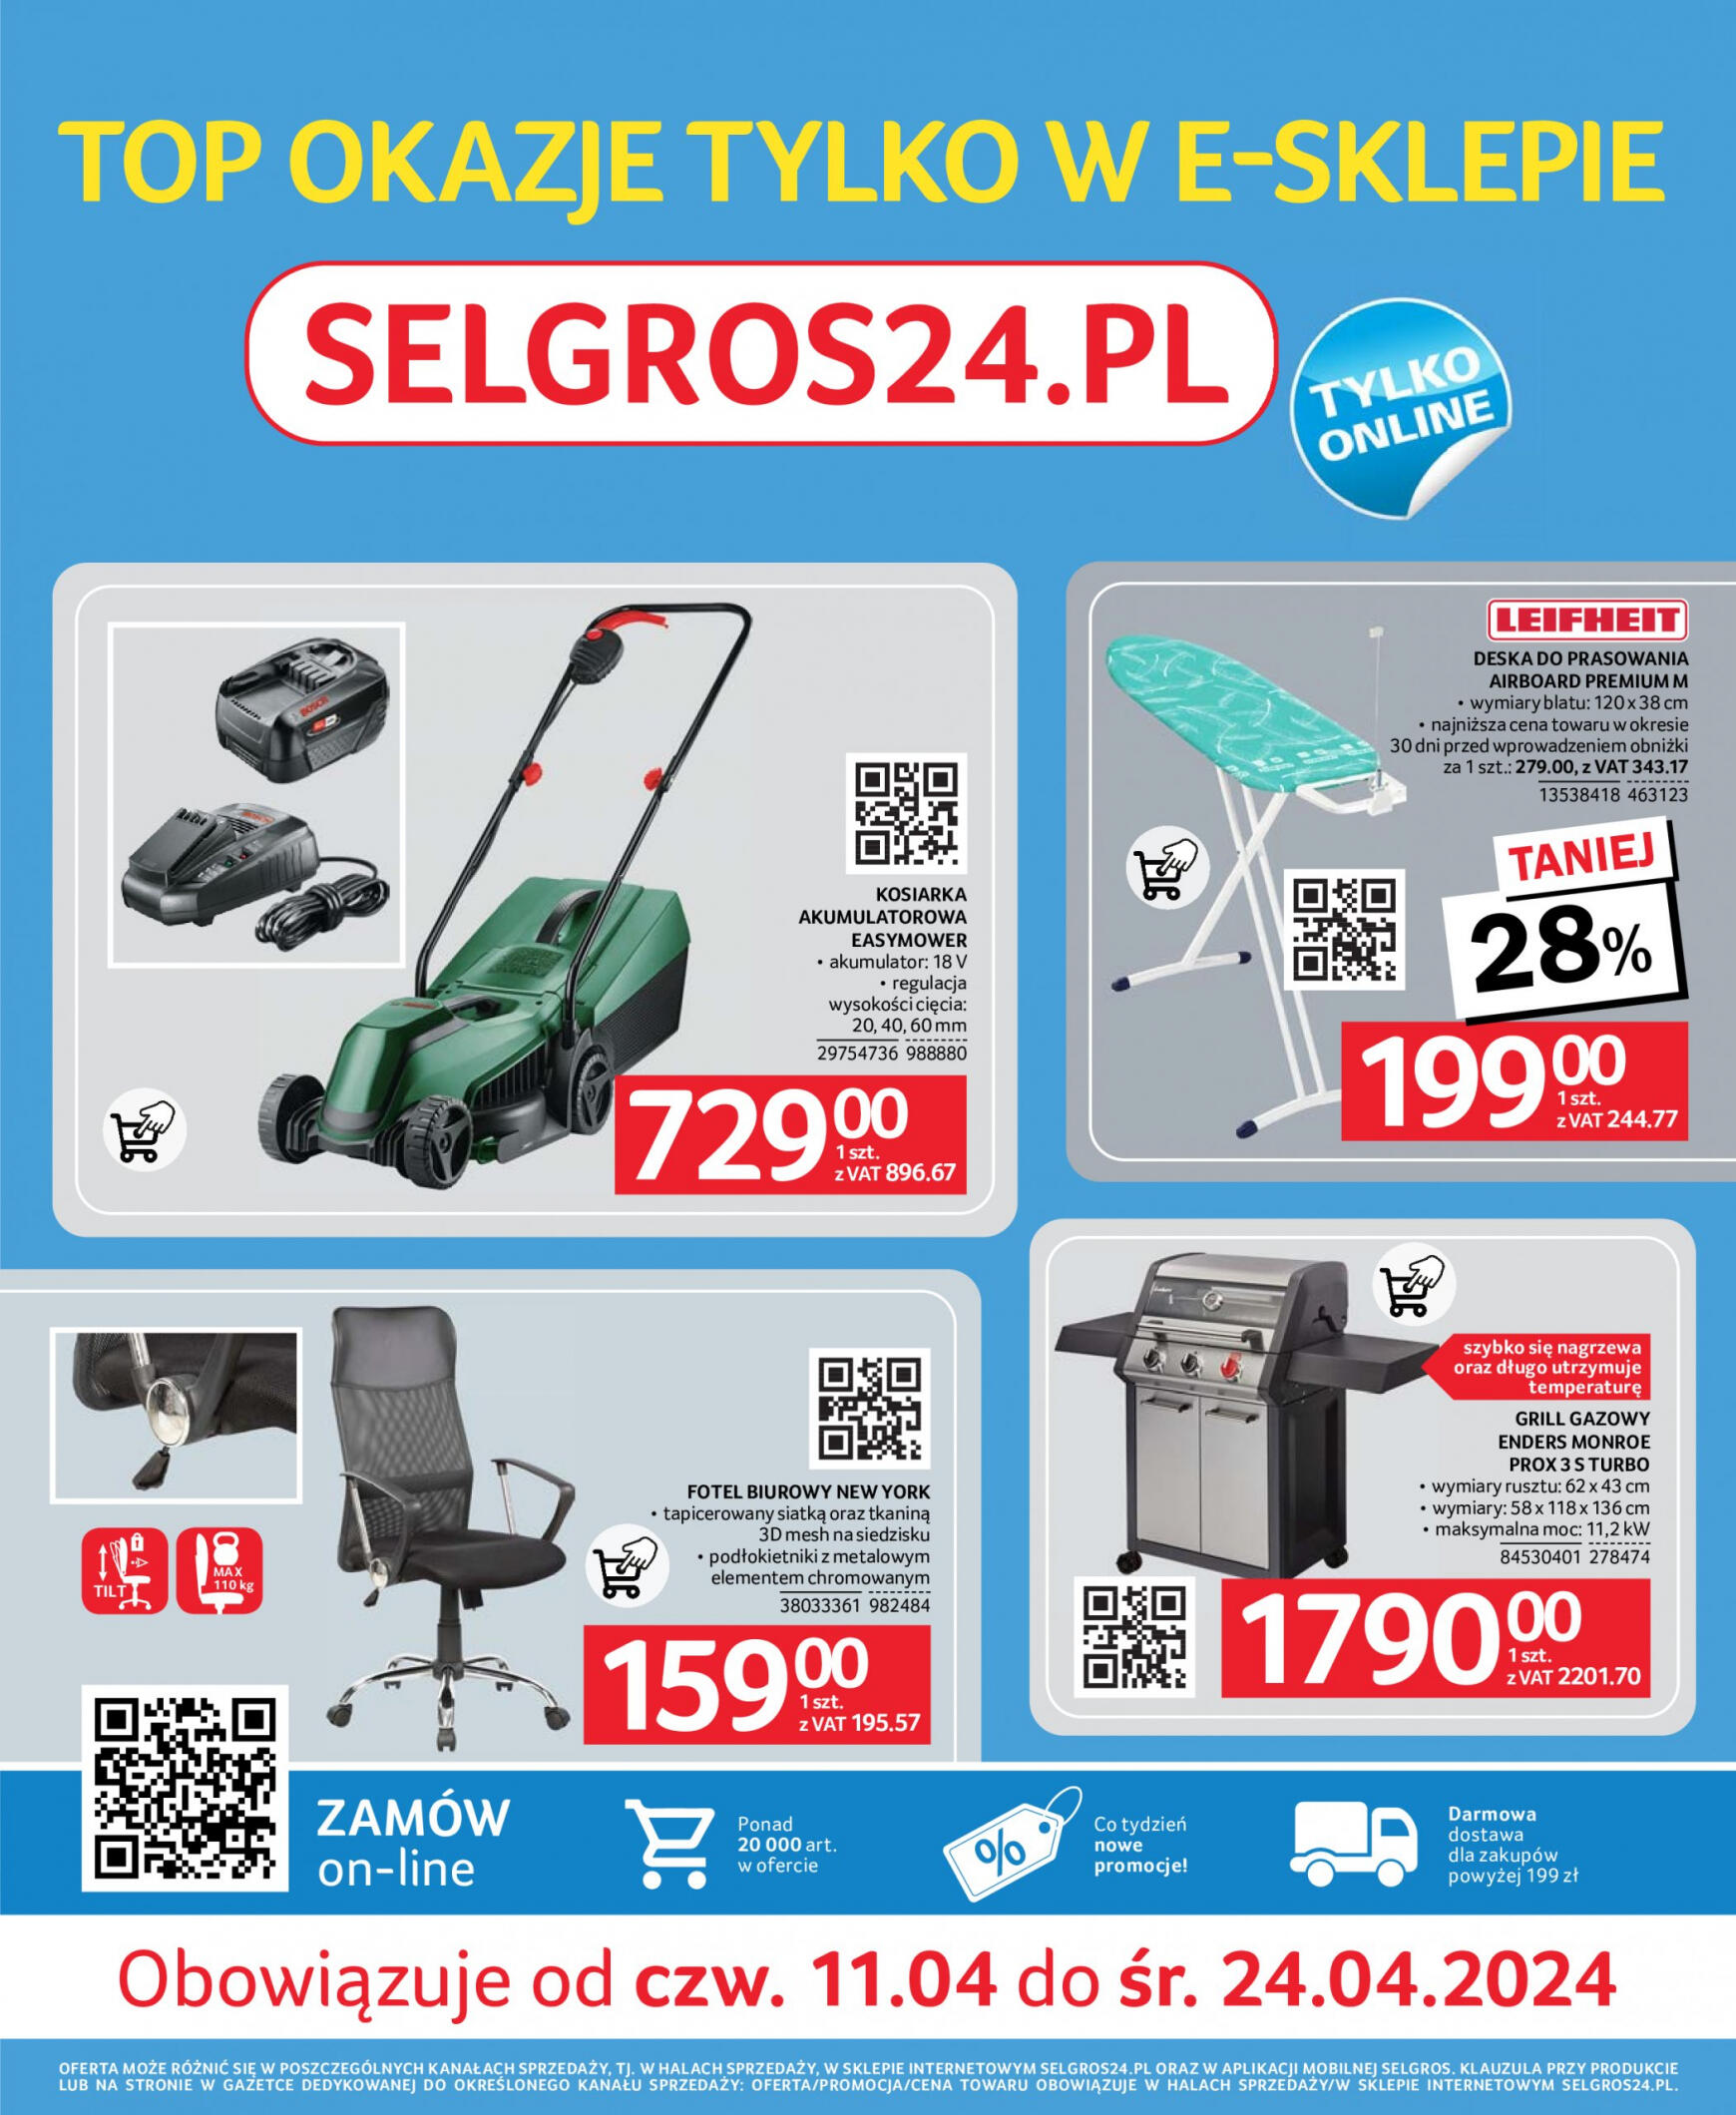 selgros - Selgros cash&carry - E-sklep gazetka aktualna ważna od 11.04. - 24.04.